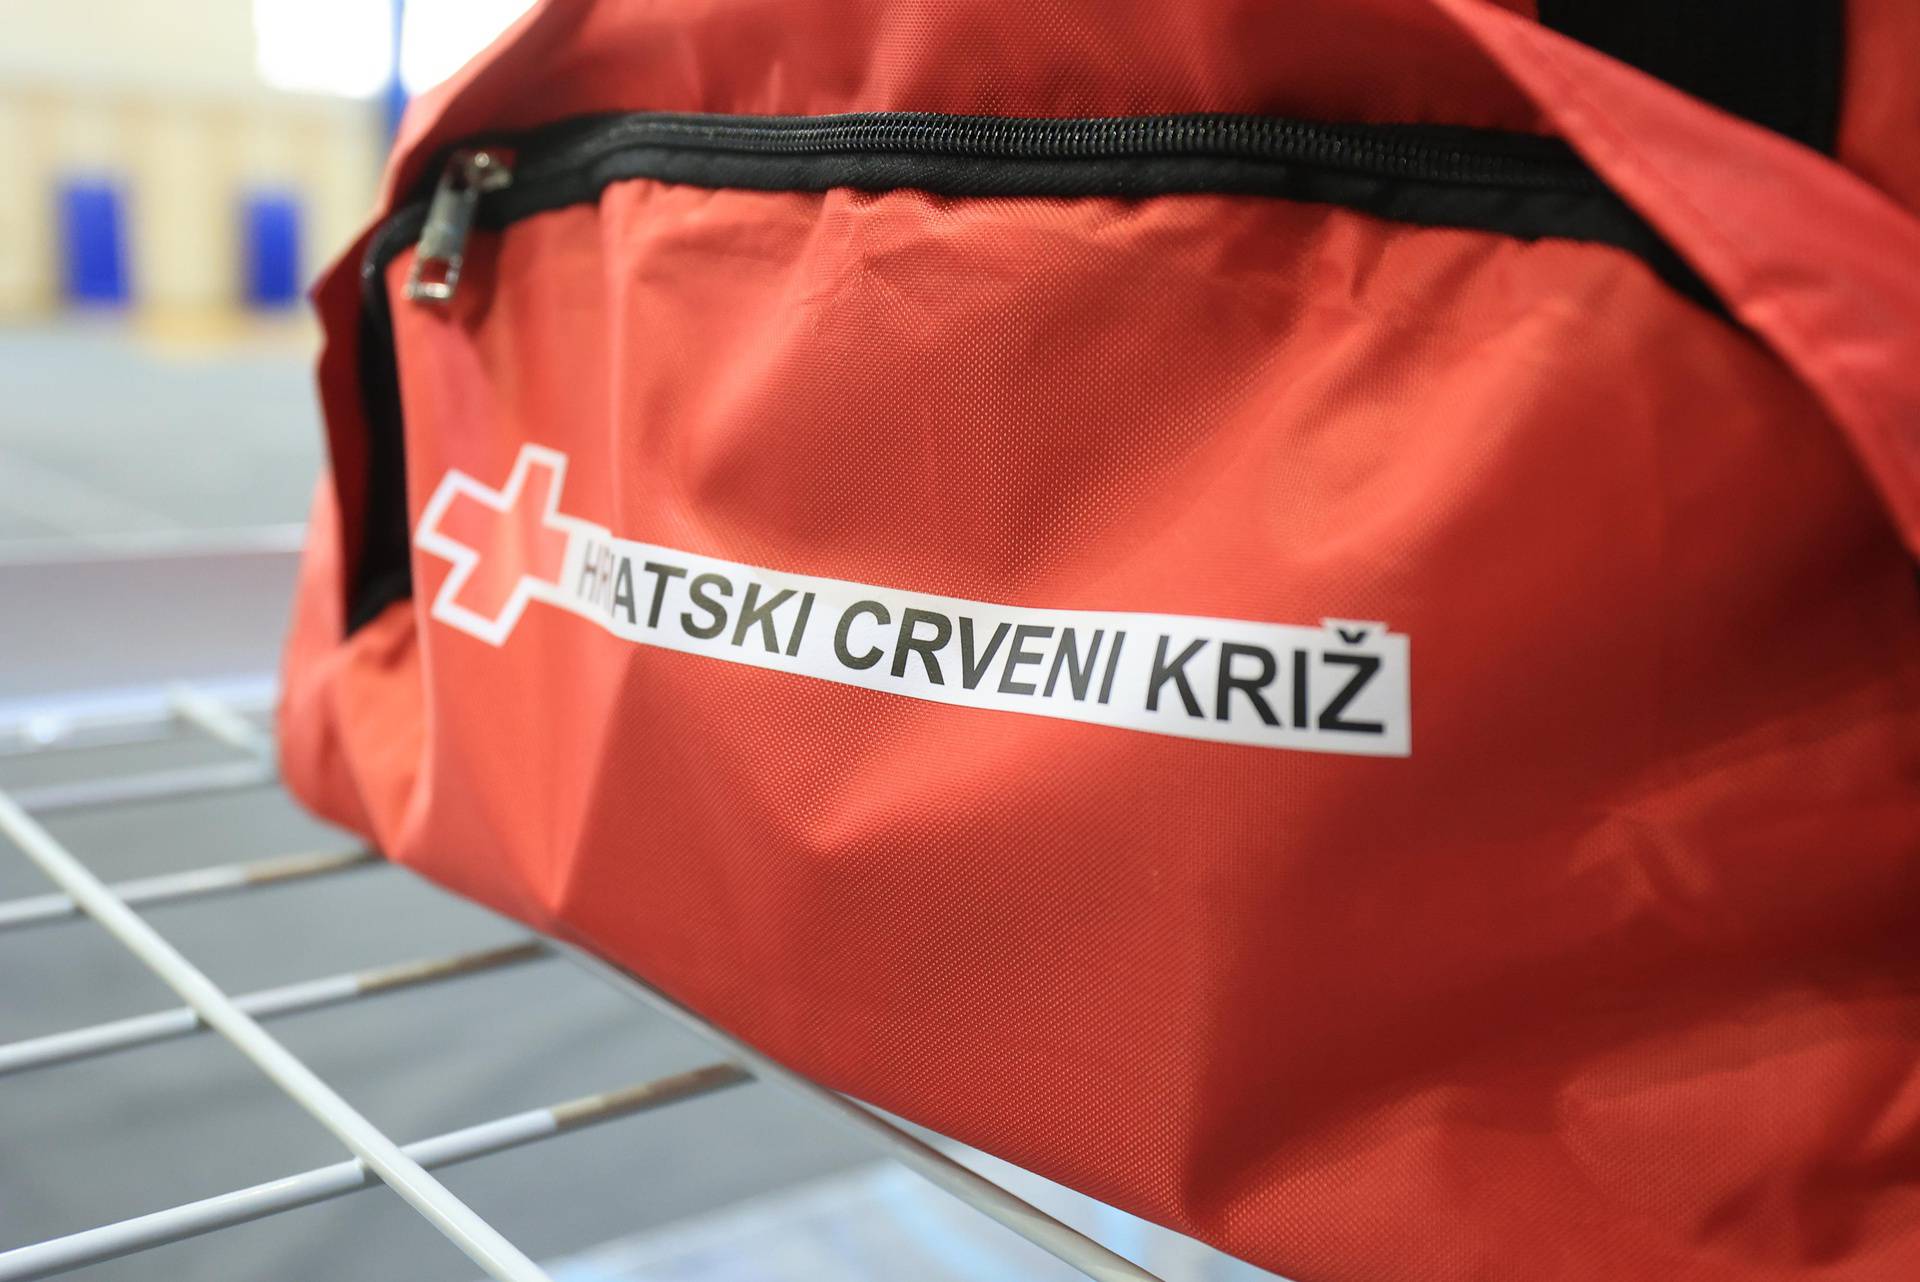 Hrvatski Crveni križ otvorio je donatorski telefon, skuplja se pomoć za izbjeglice iz Ukrajine